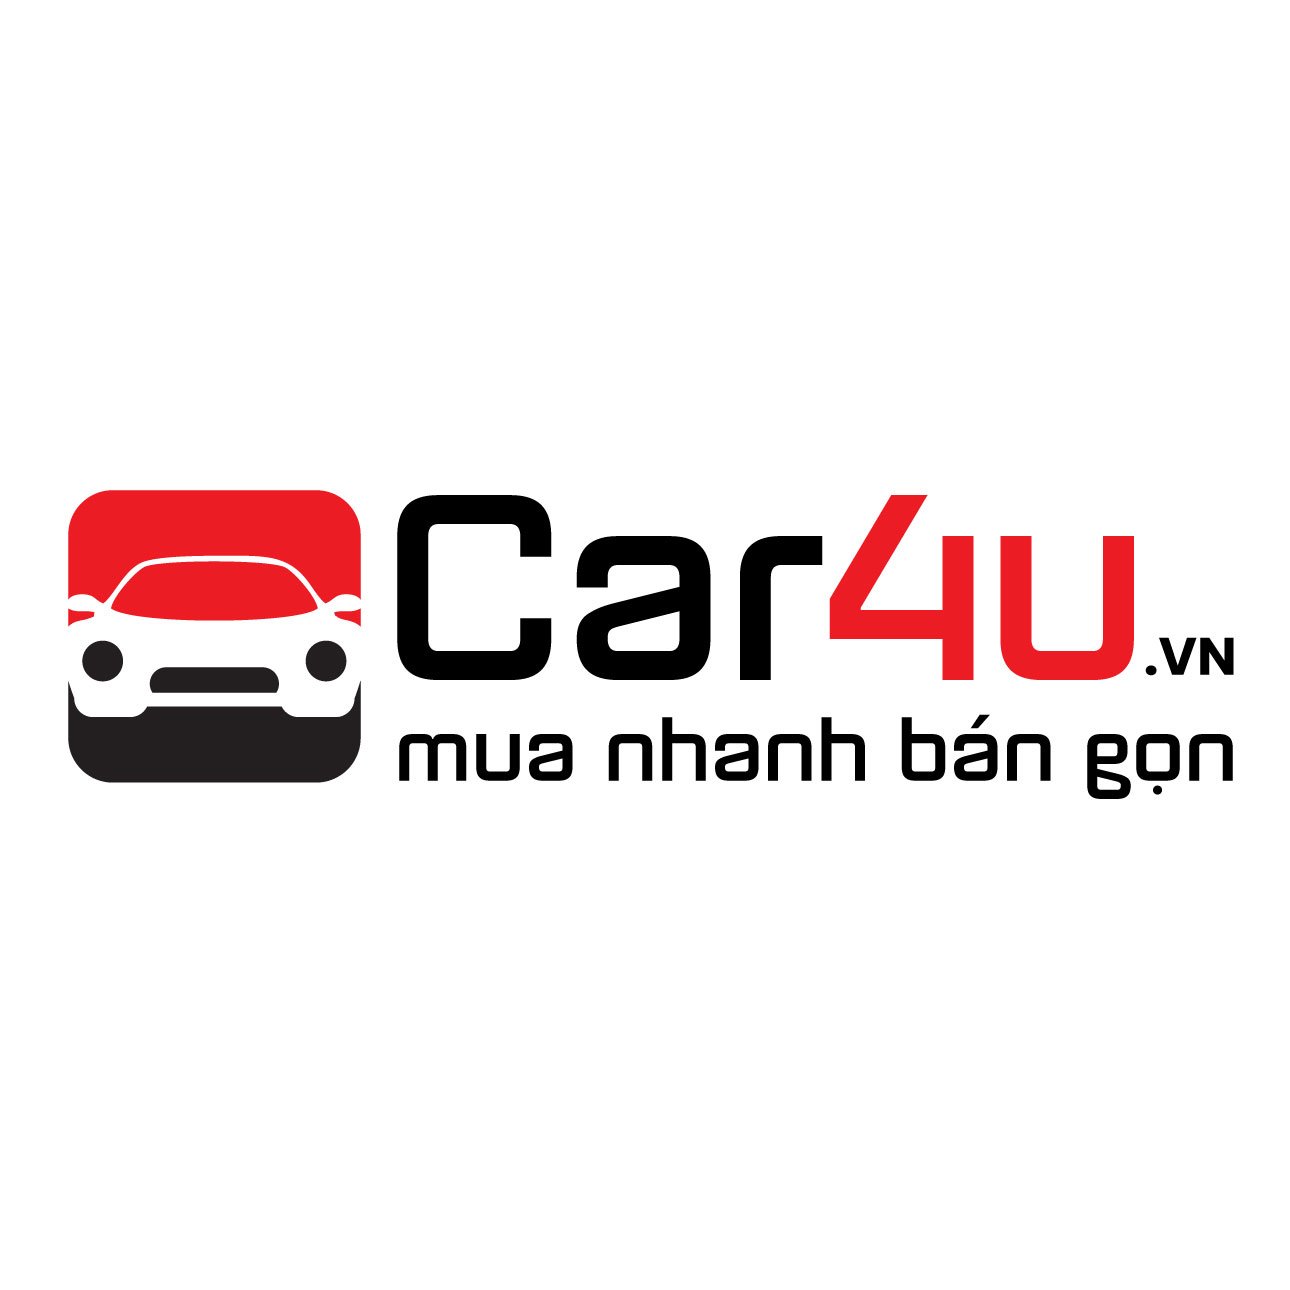 Car4u